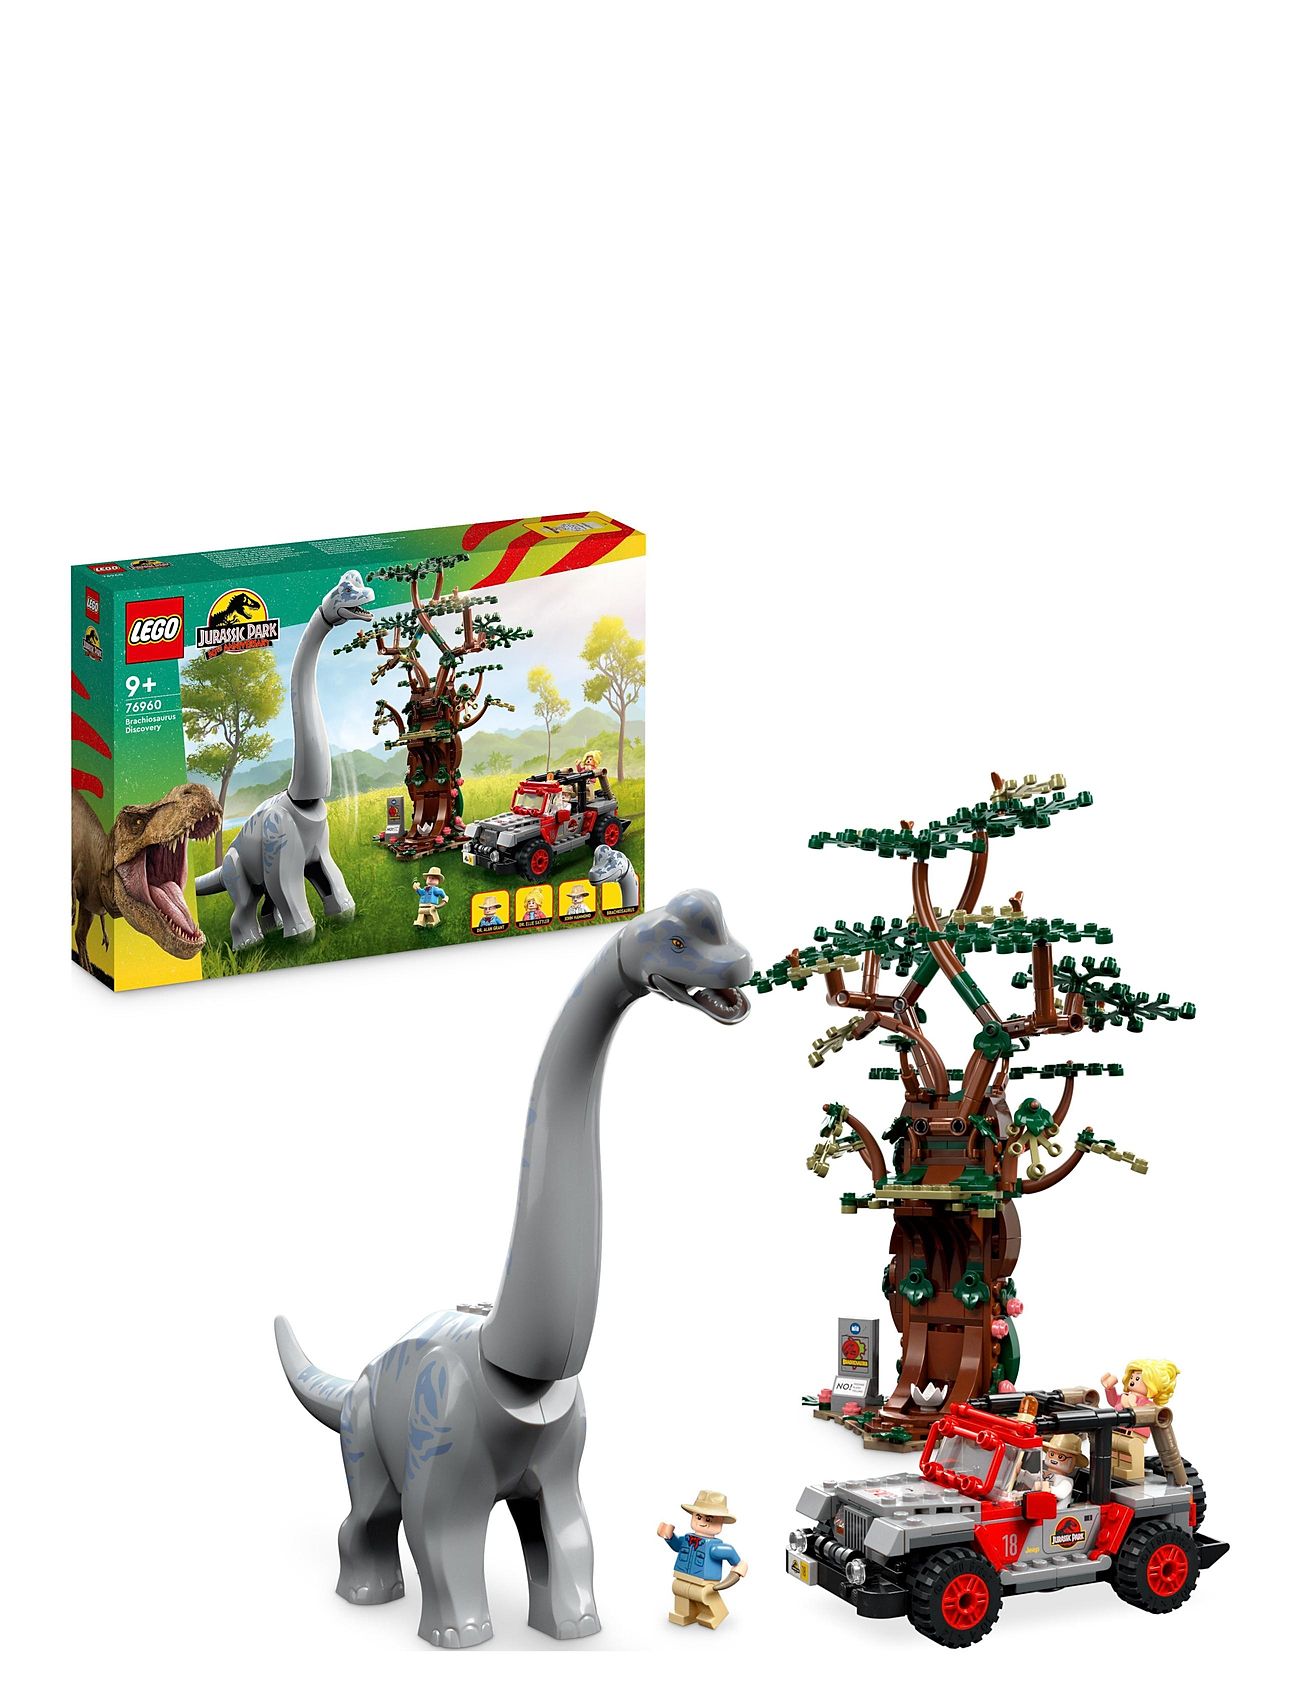 Brachiosaurus Discovery Dino Set Toys Lego Toys Lego jurassic World Multi/patterned LEGO